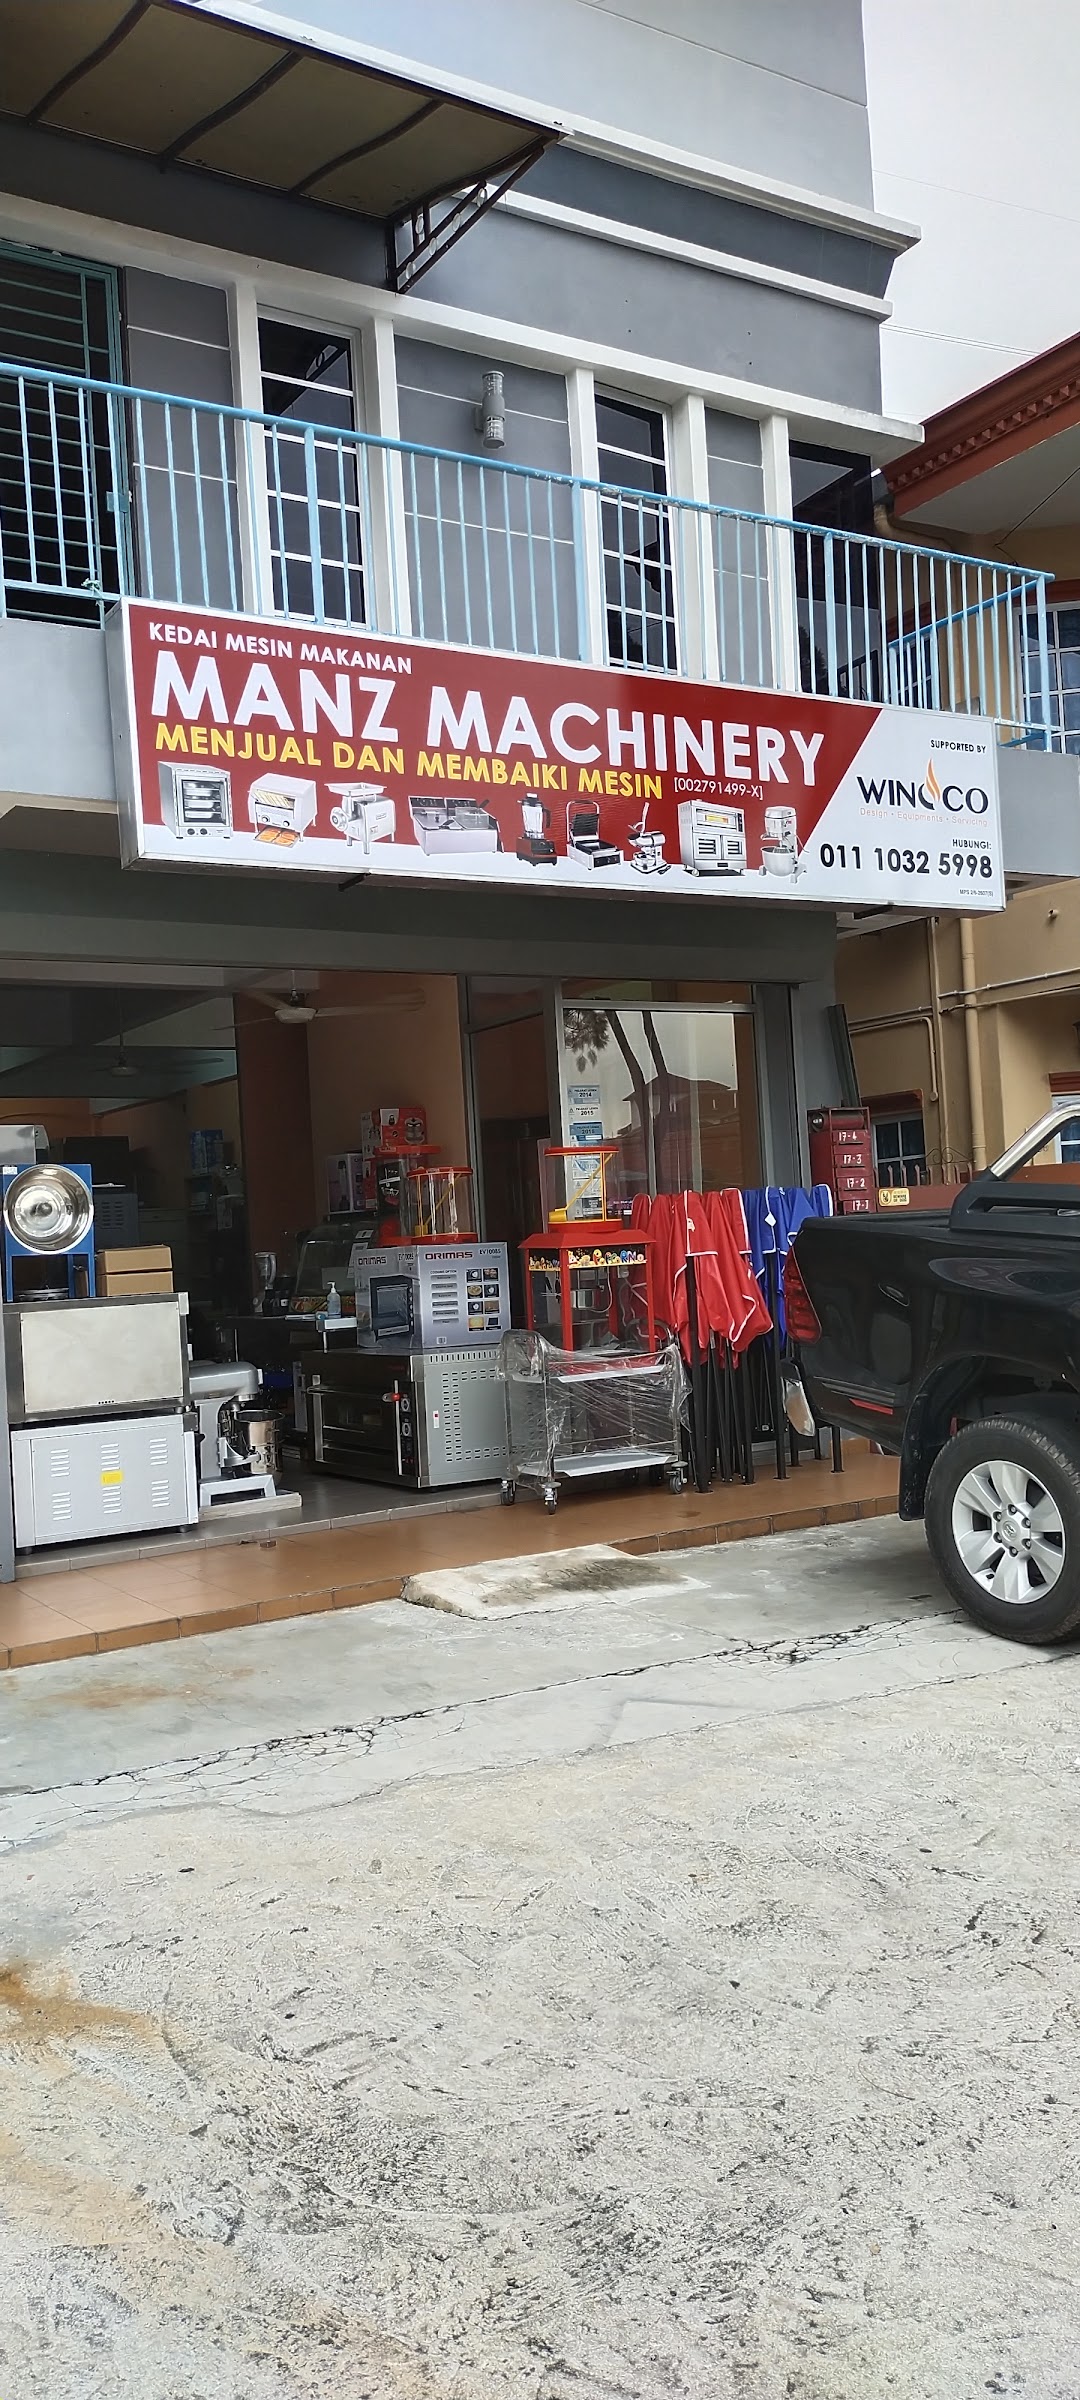 Manz machinery